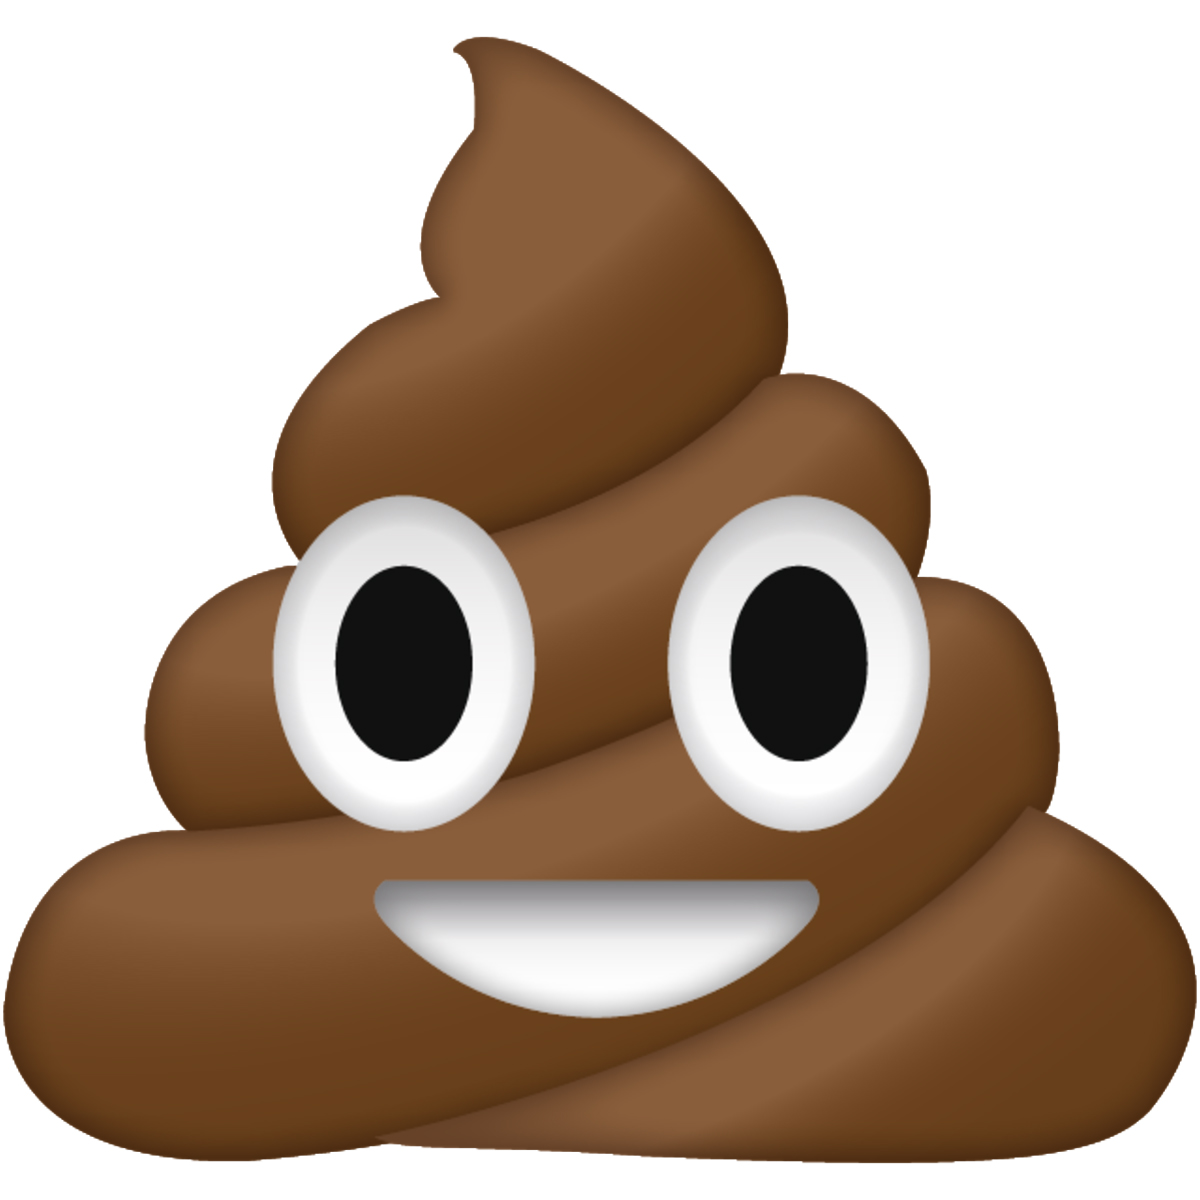 poop-emoji.jpg